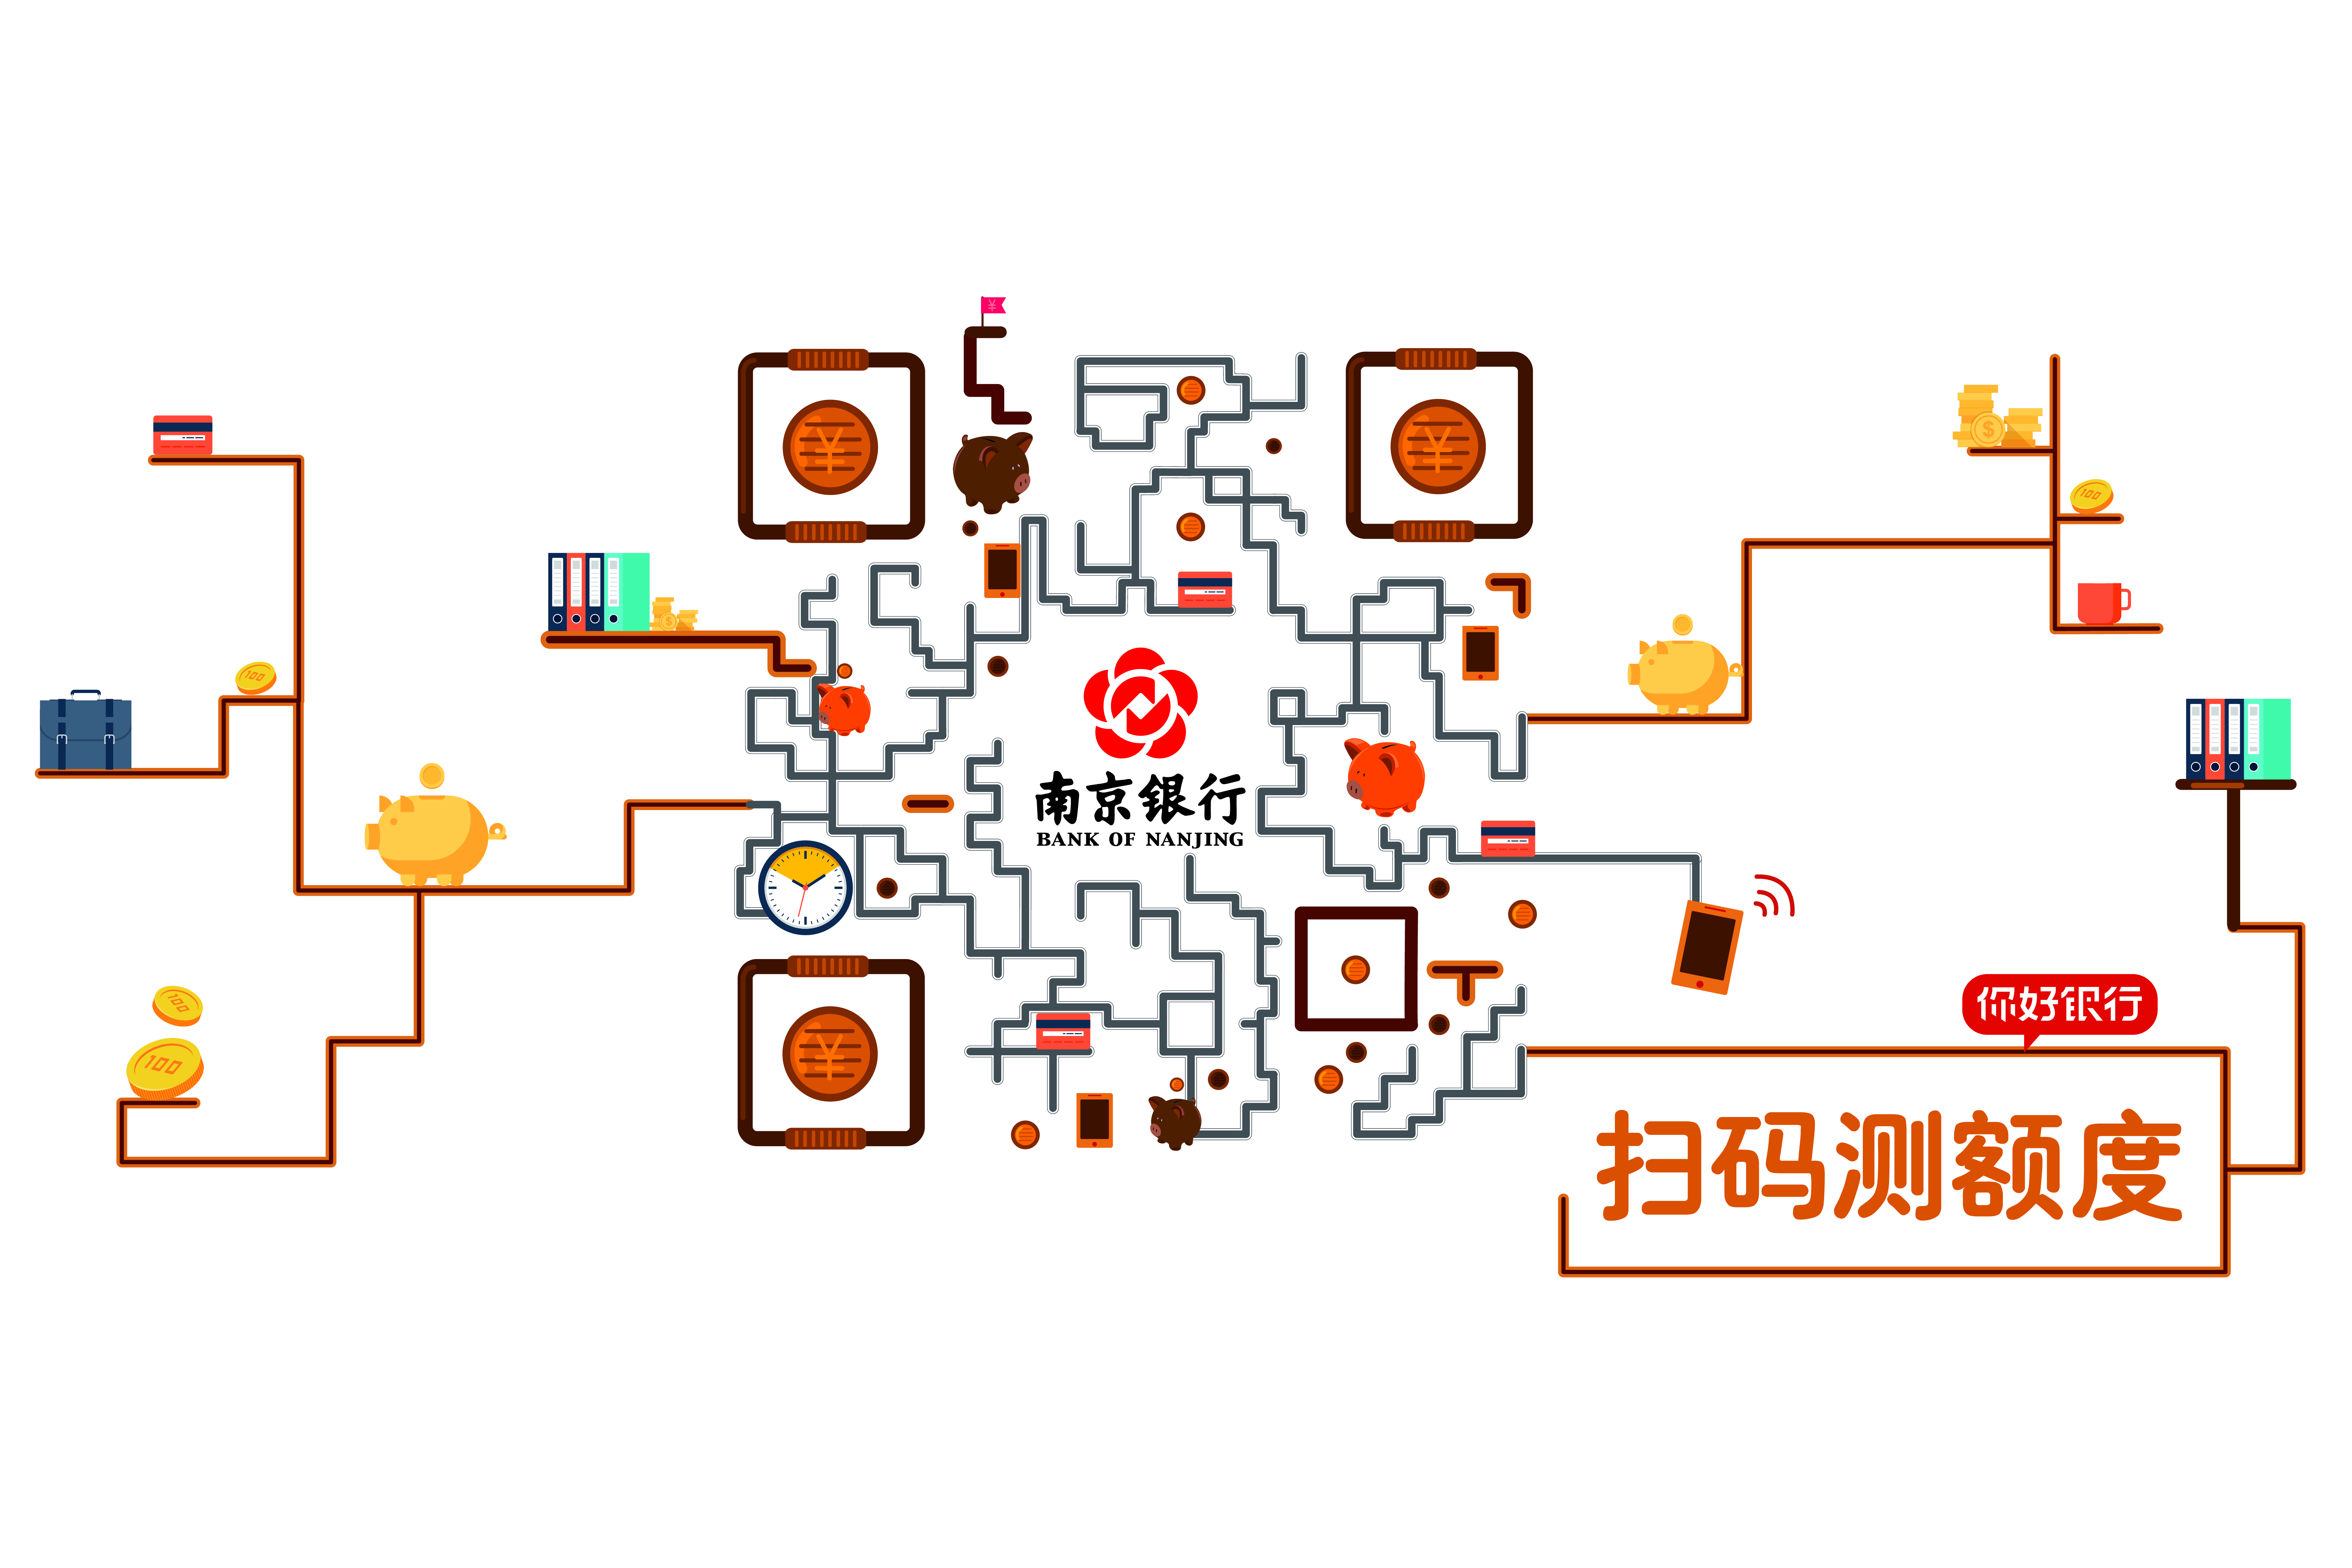 南京银行平面静态艺术二维码创意二维码-第九工场设计外包